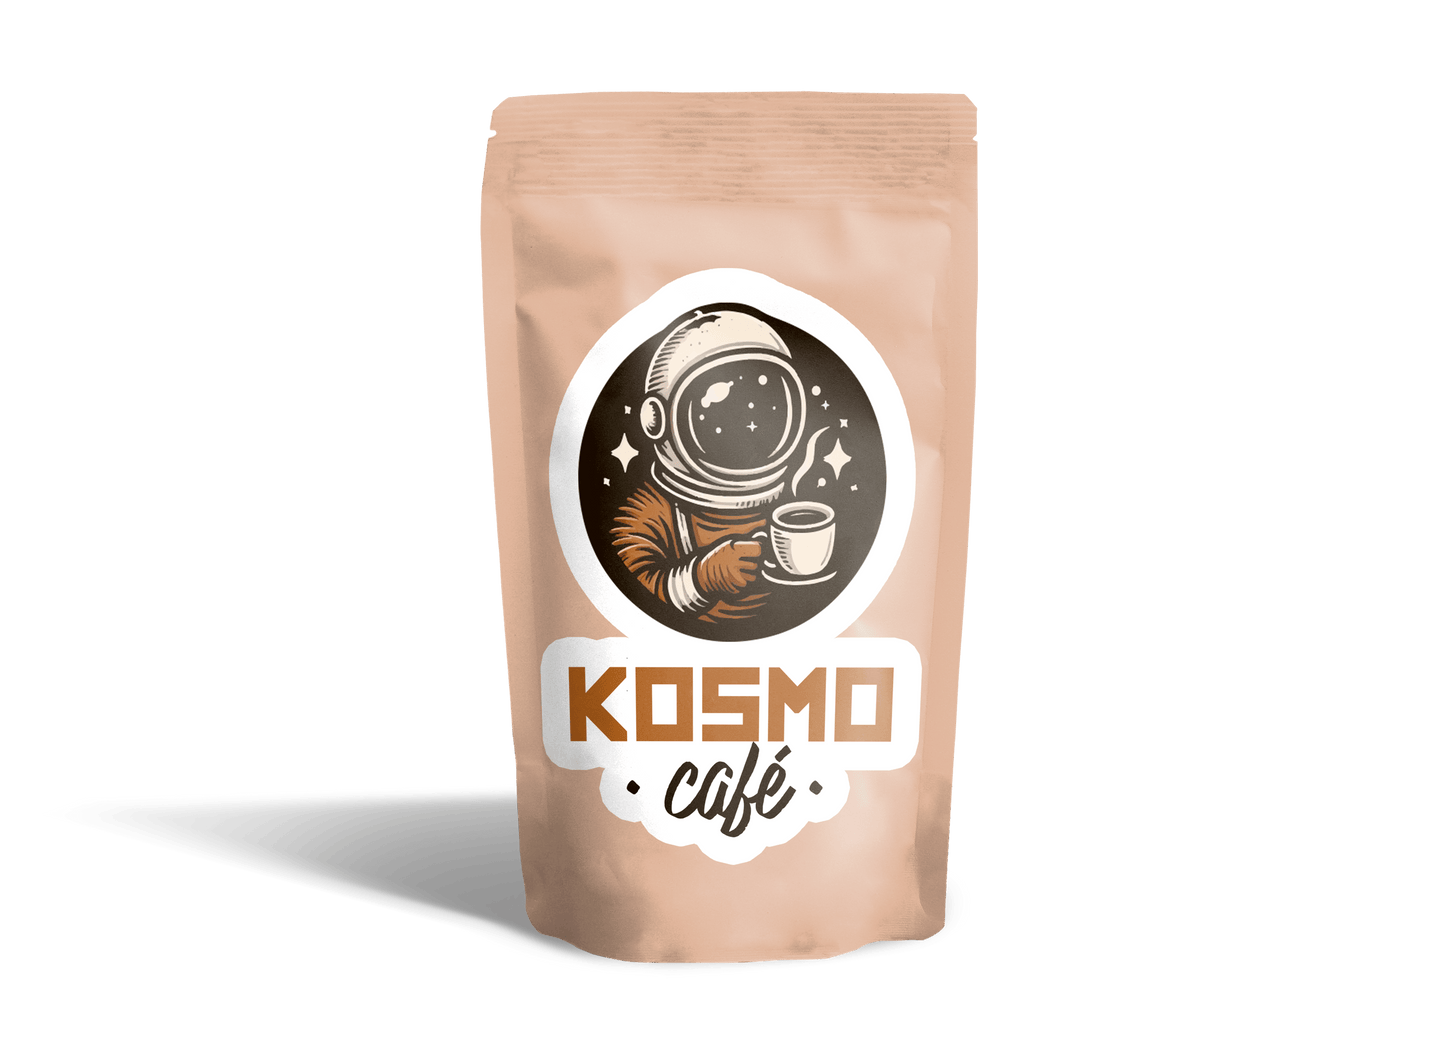 Kosmo Café